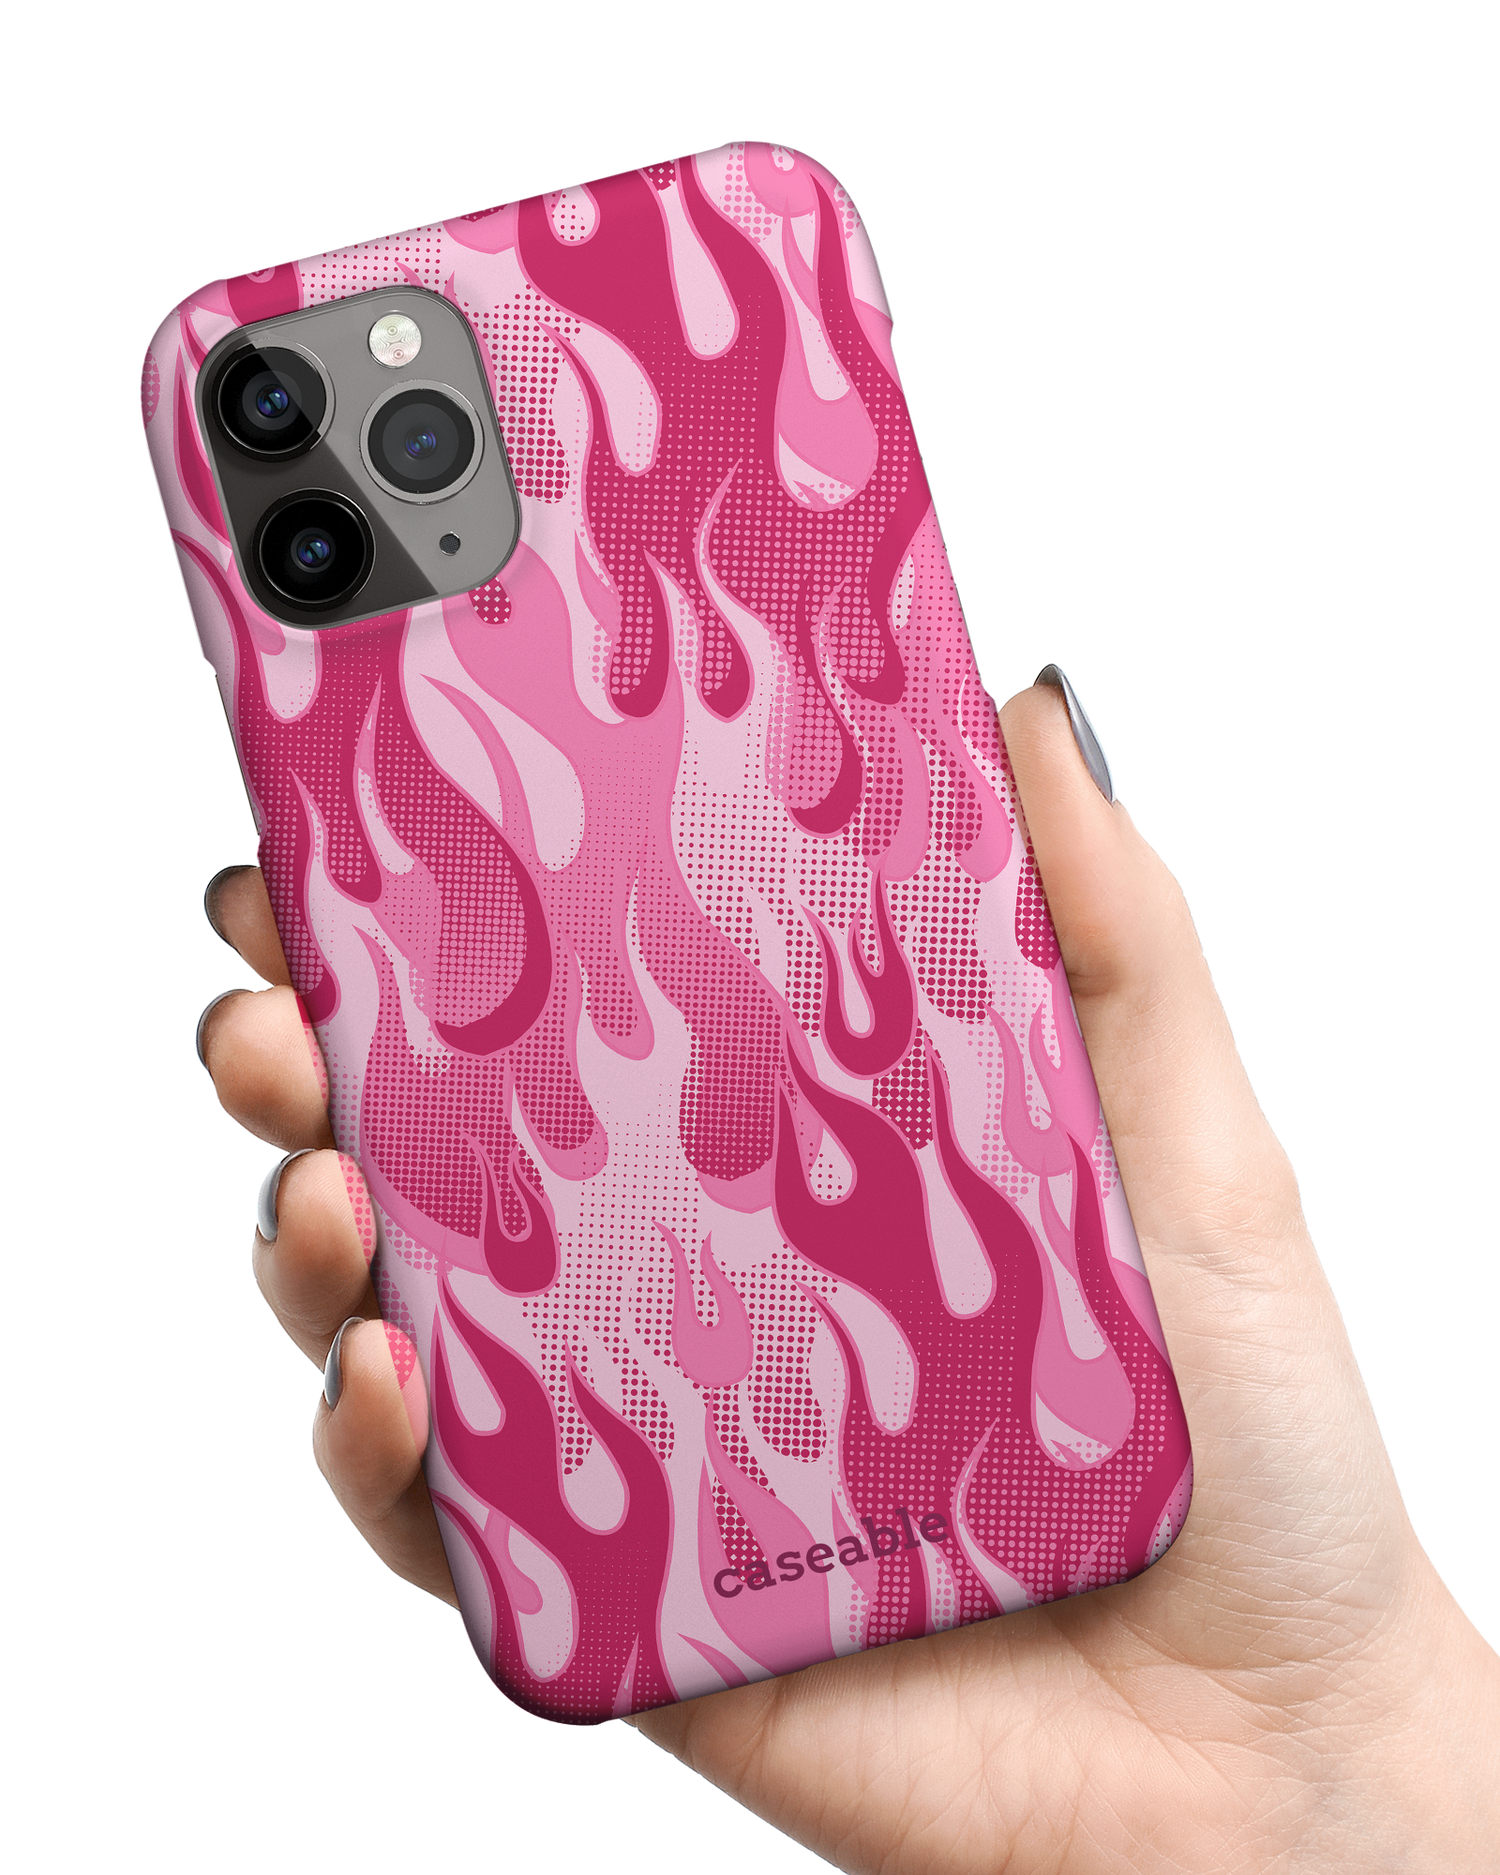 Pink Flames Hardcase Handyhülle Apple iPhone 11 Pro Max in der Hand gehalten